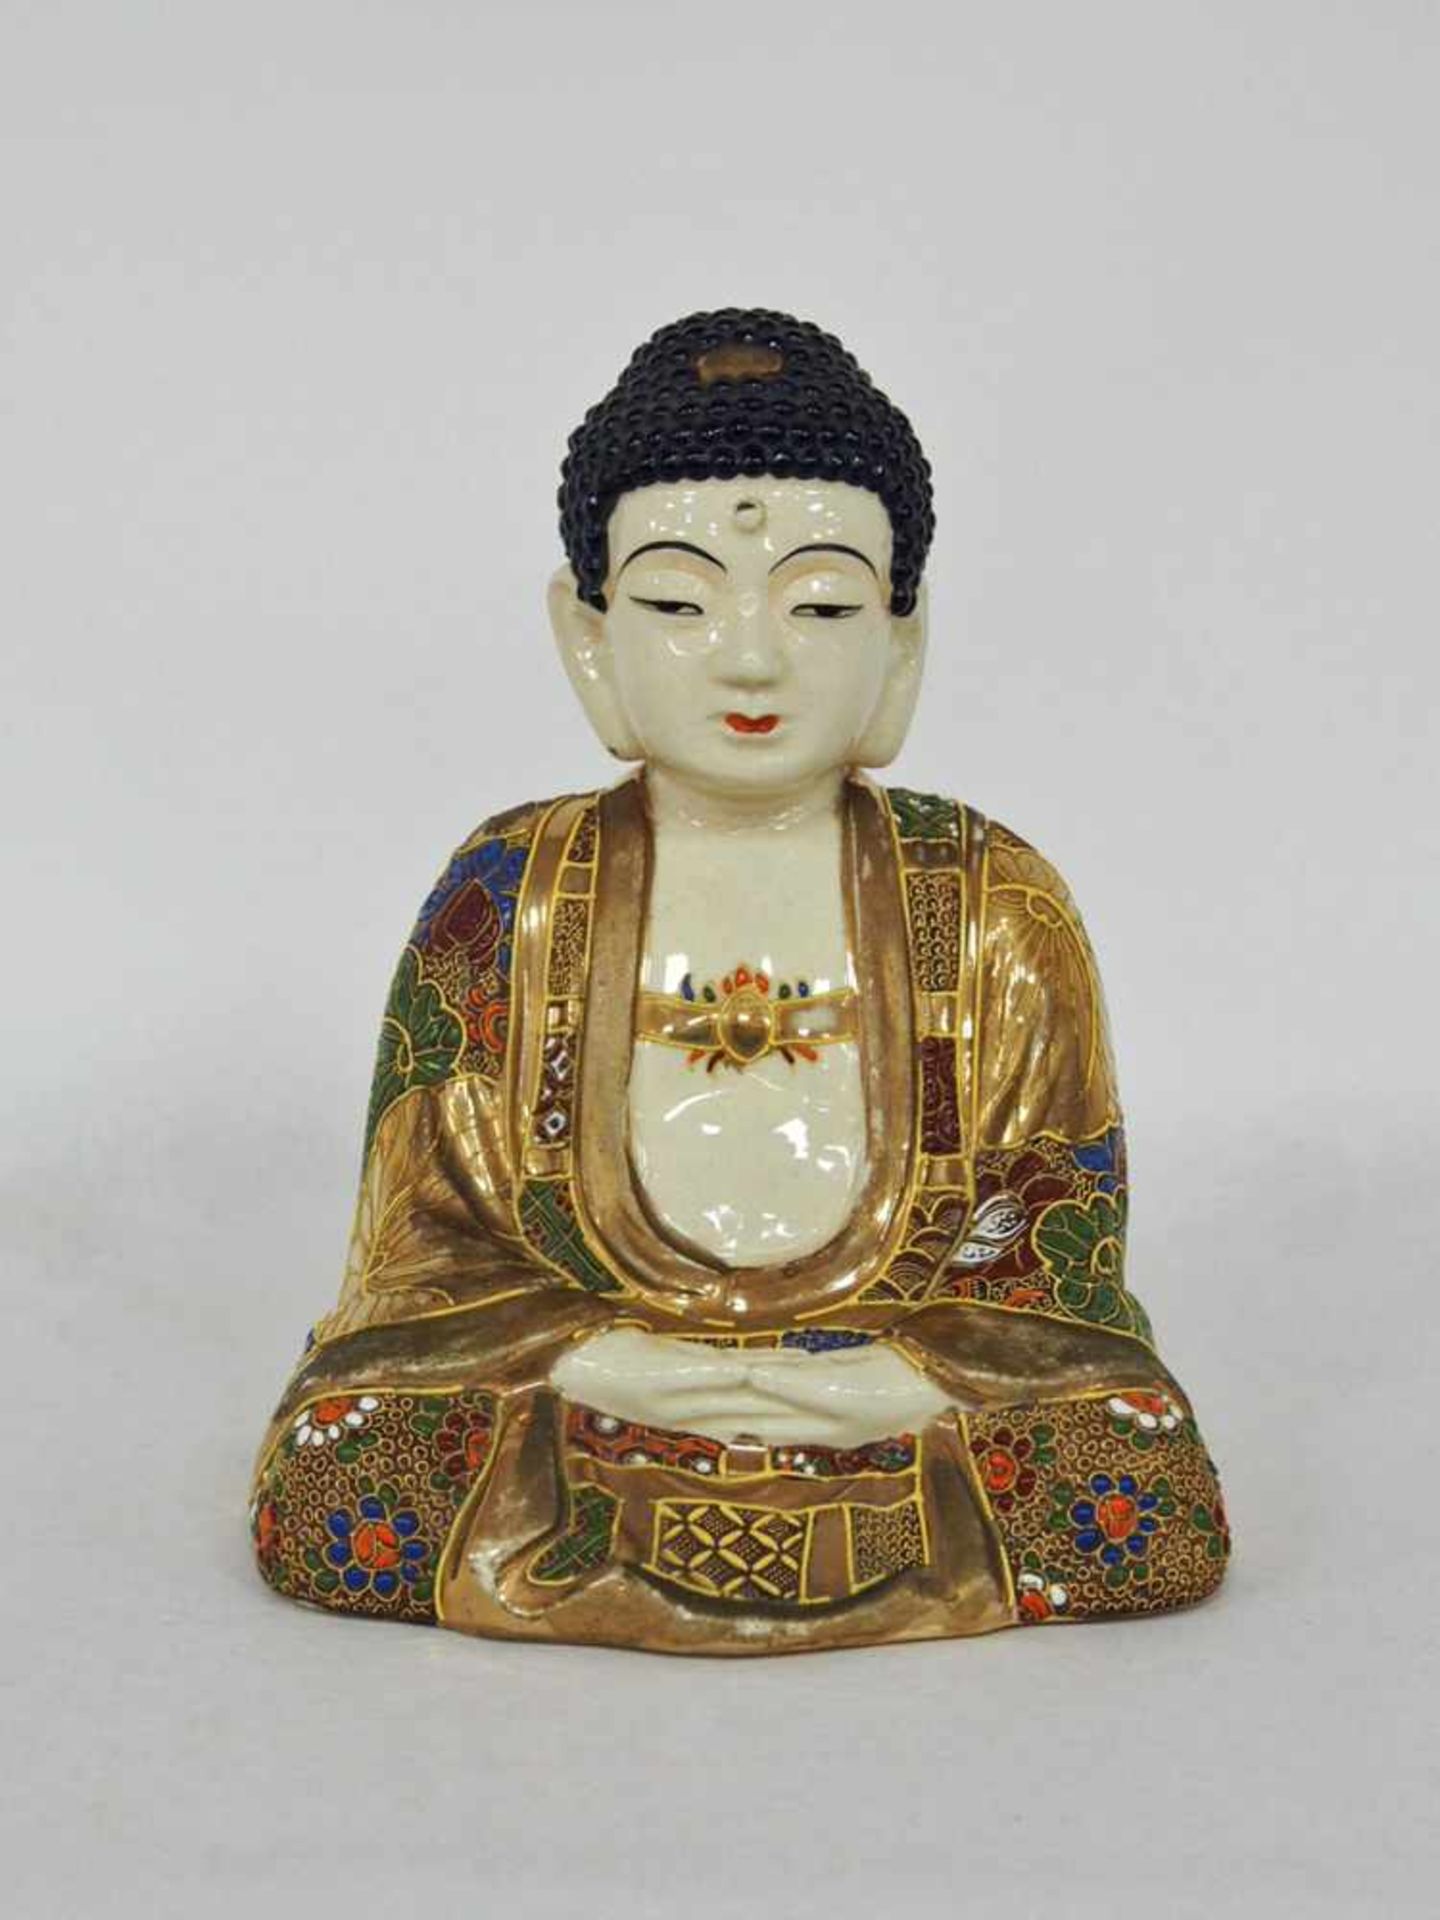 BuddhaPorzellan, bemalt und vergoldet, bodenseitig signiert, Japan, um 1900, Höhe 23 cm- - -25.